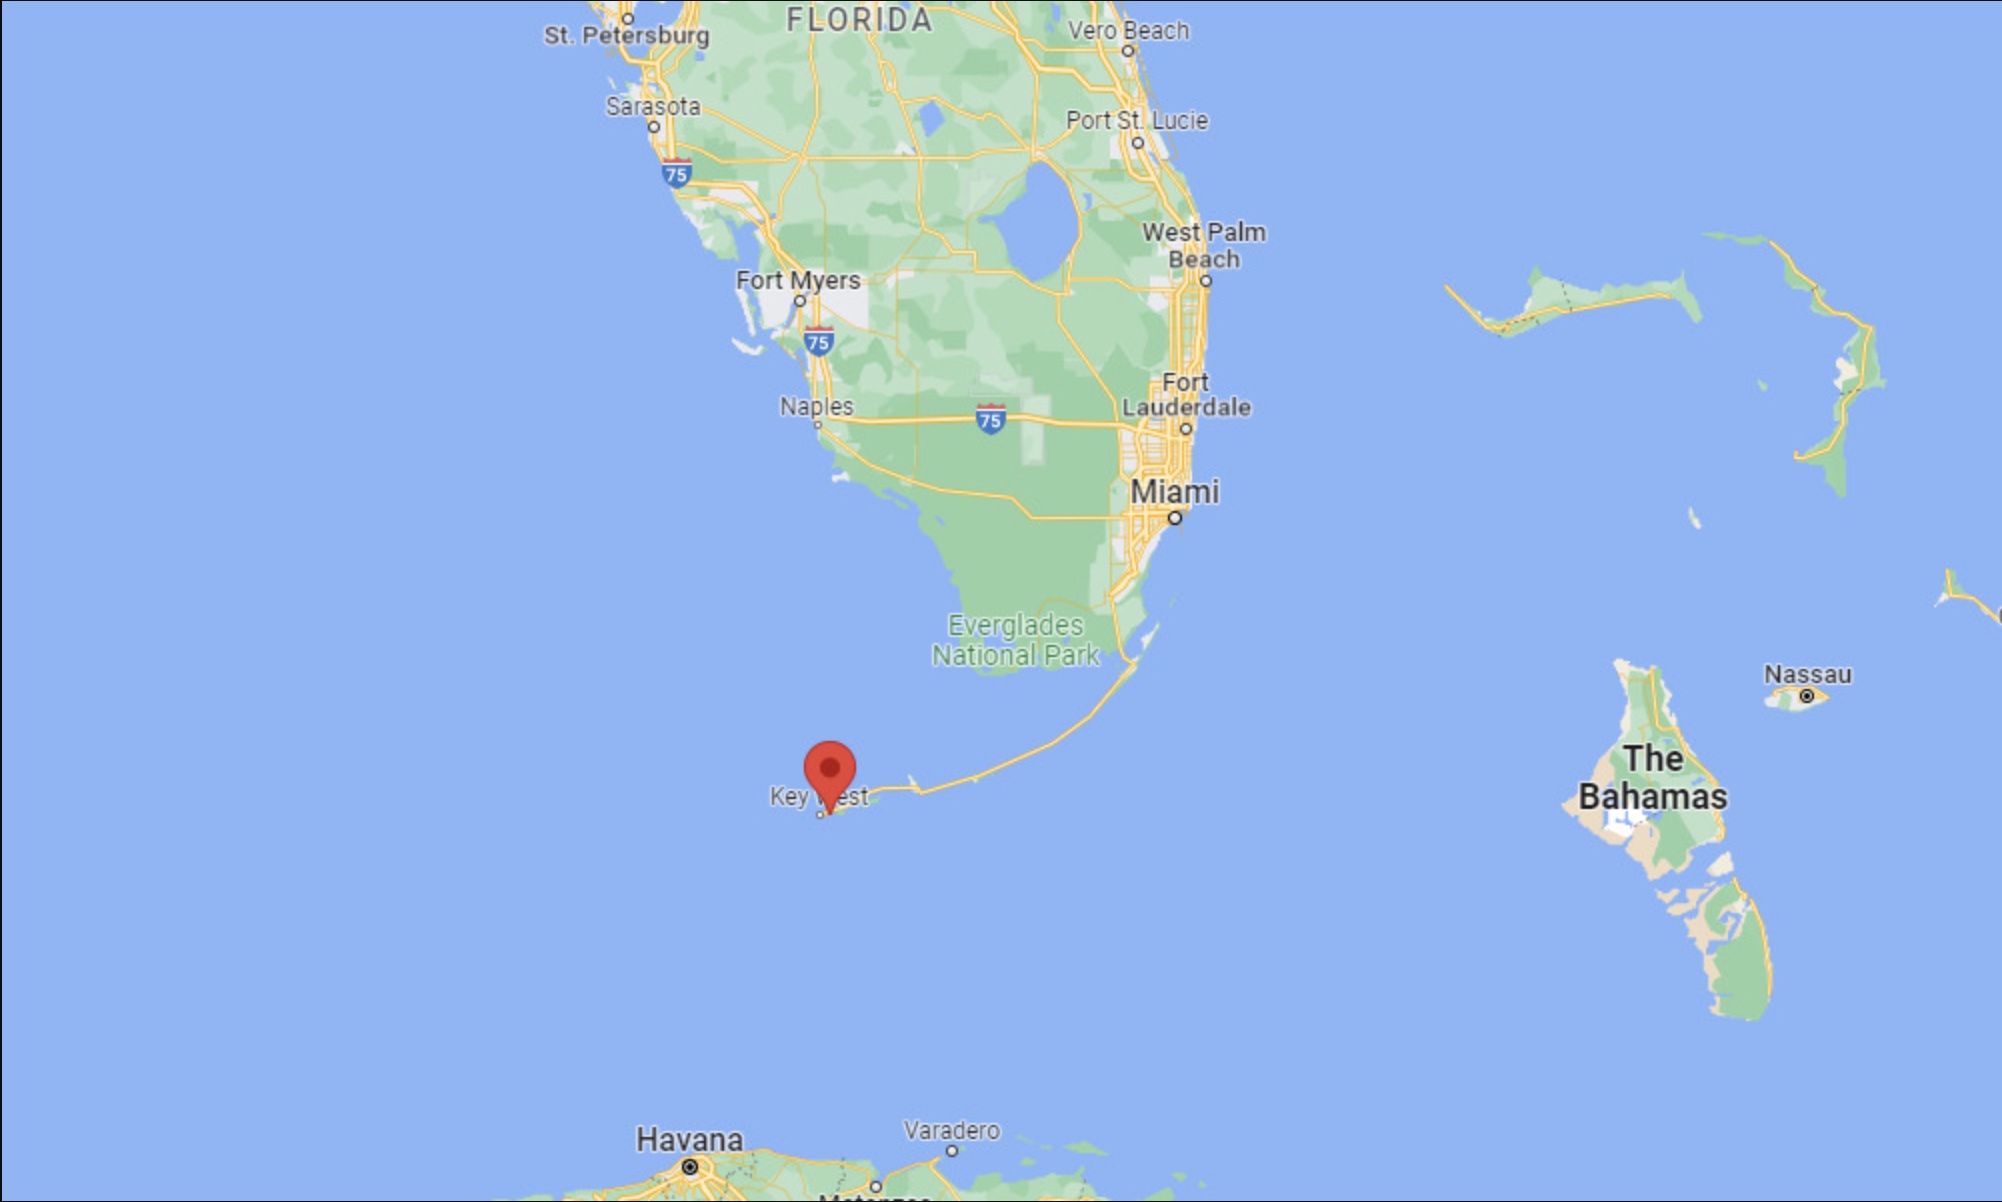 Cuatro de los náufragos fueron rescatados en las costas de la isla Stock, cerca de Cayo Hueso. (Google)